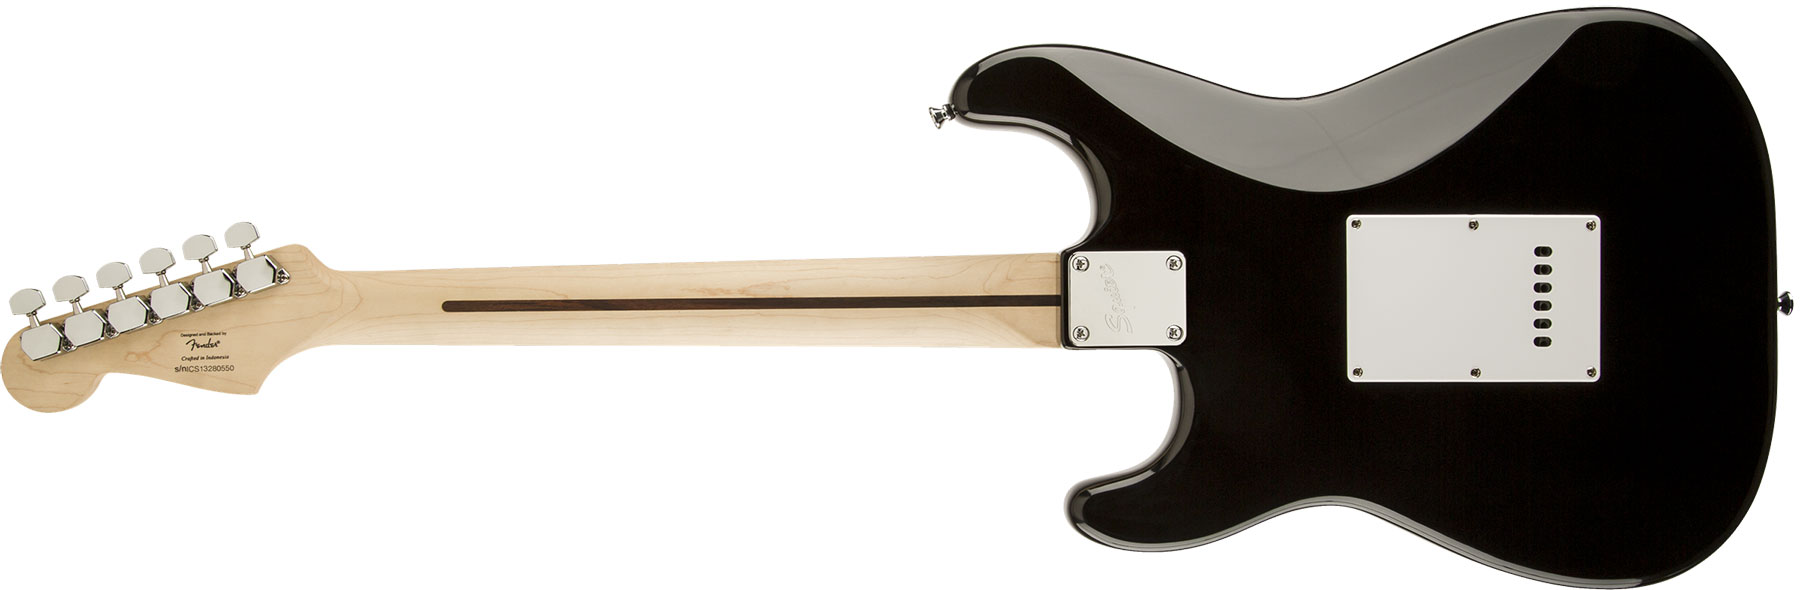 Squier Strat Bullet Sss Trem Lau - Black - Str shape electric guitar - Variation 1